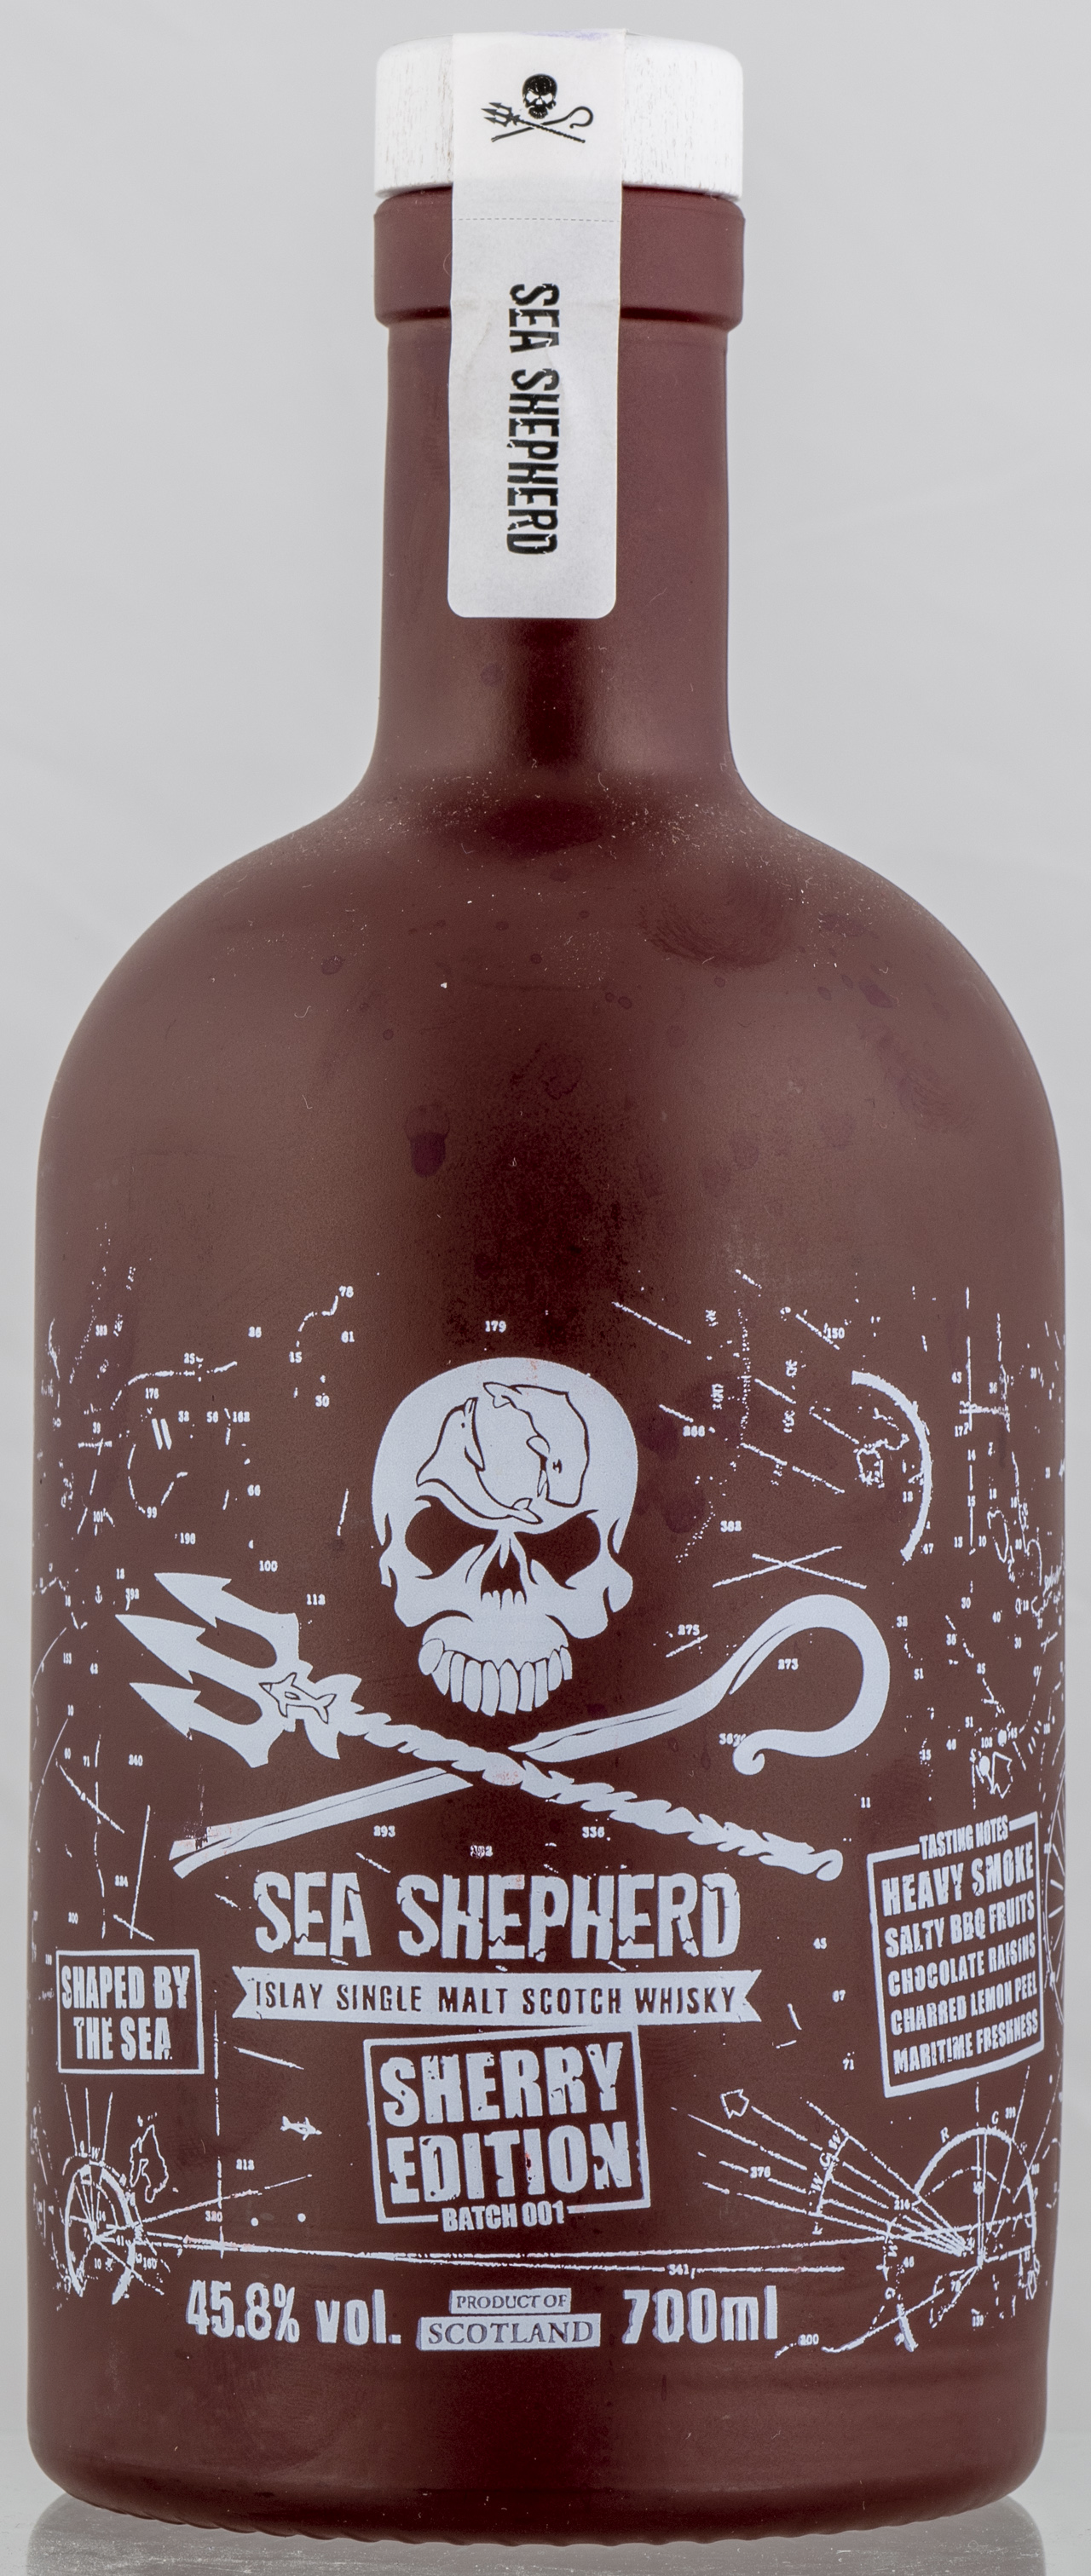 Billede: PHC_7297 - Sea Shepherd - Sherry Edition 001 - bottle front.jpg